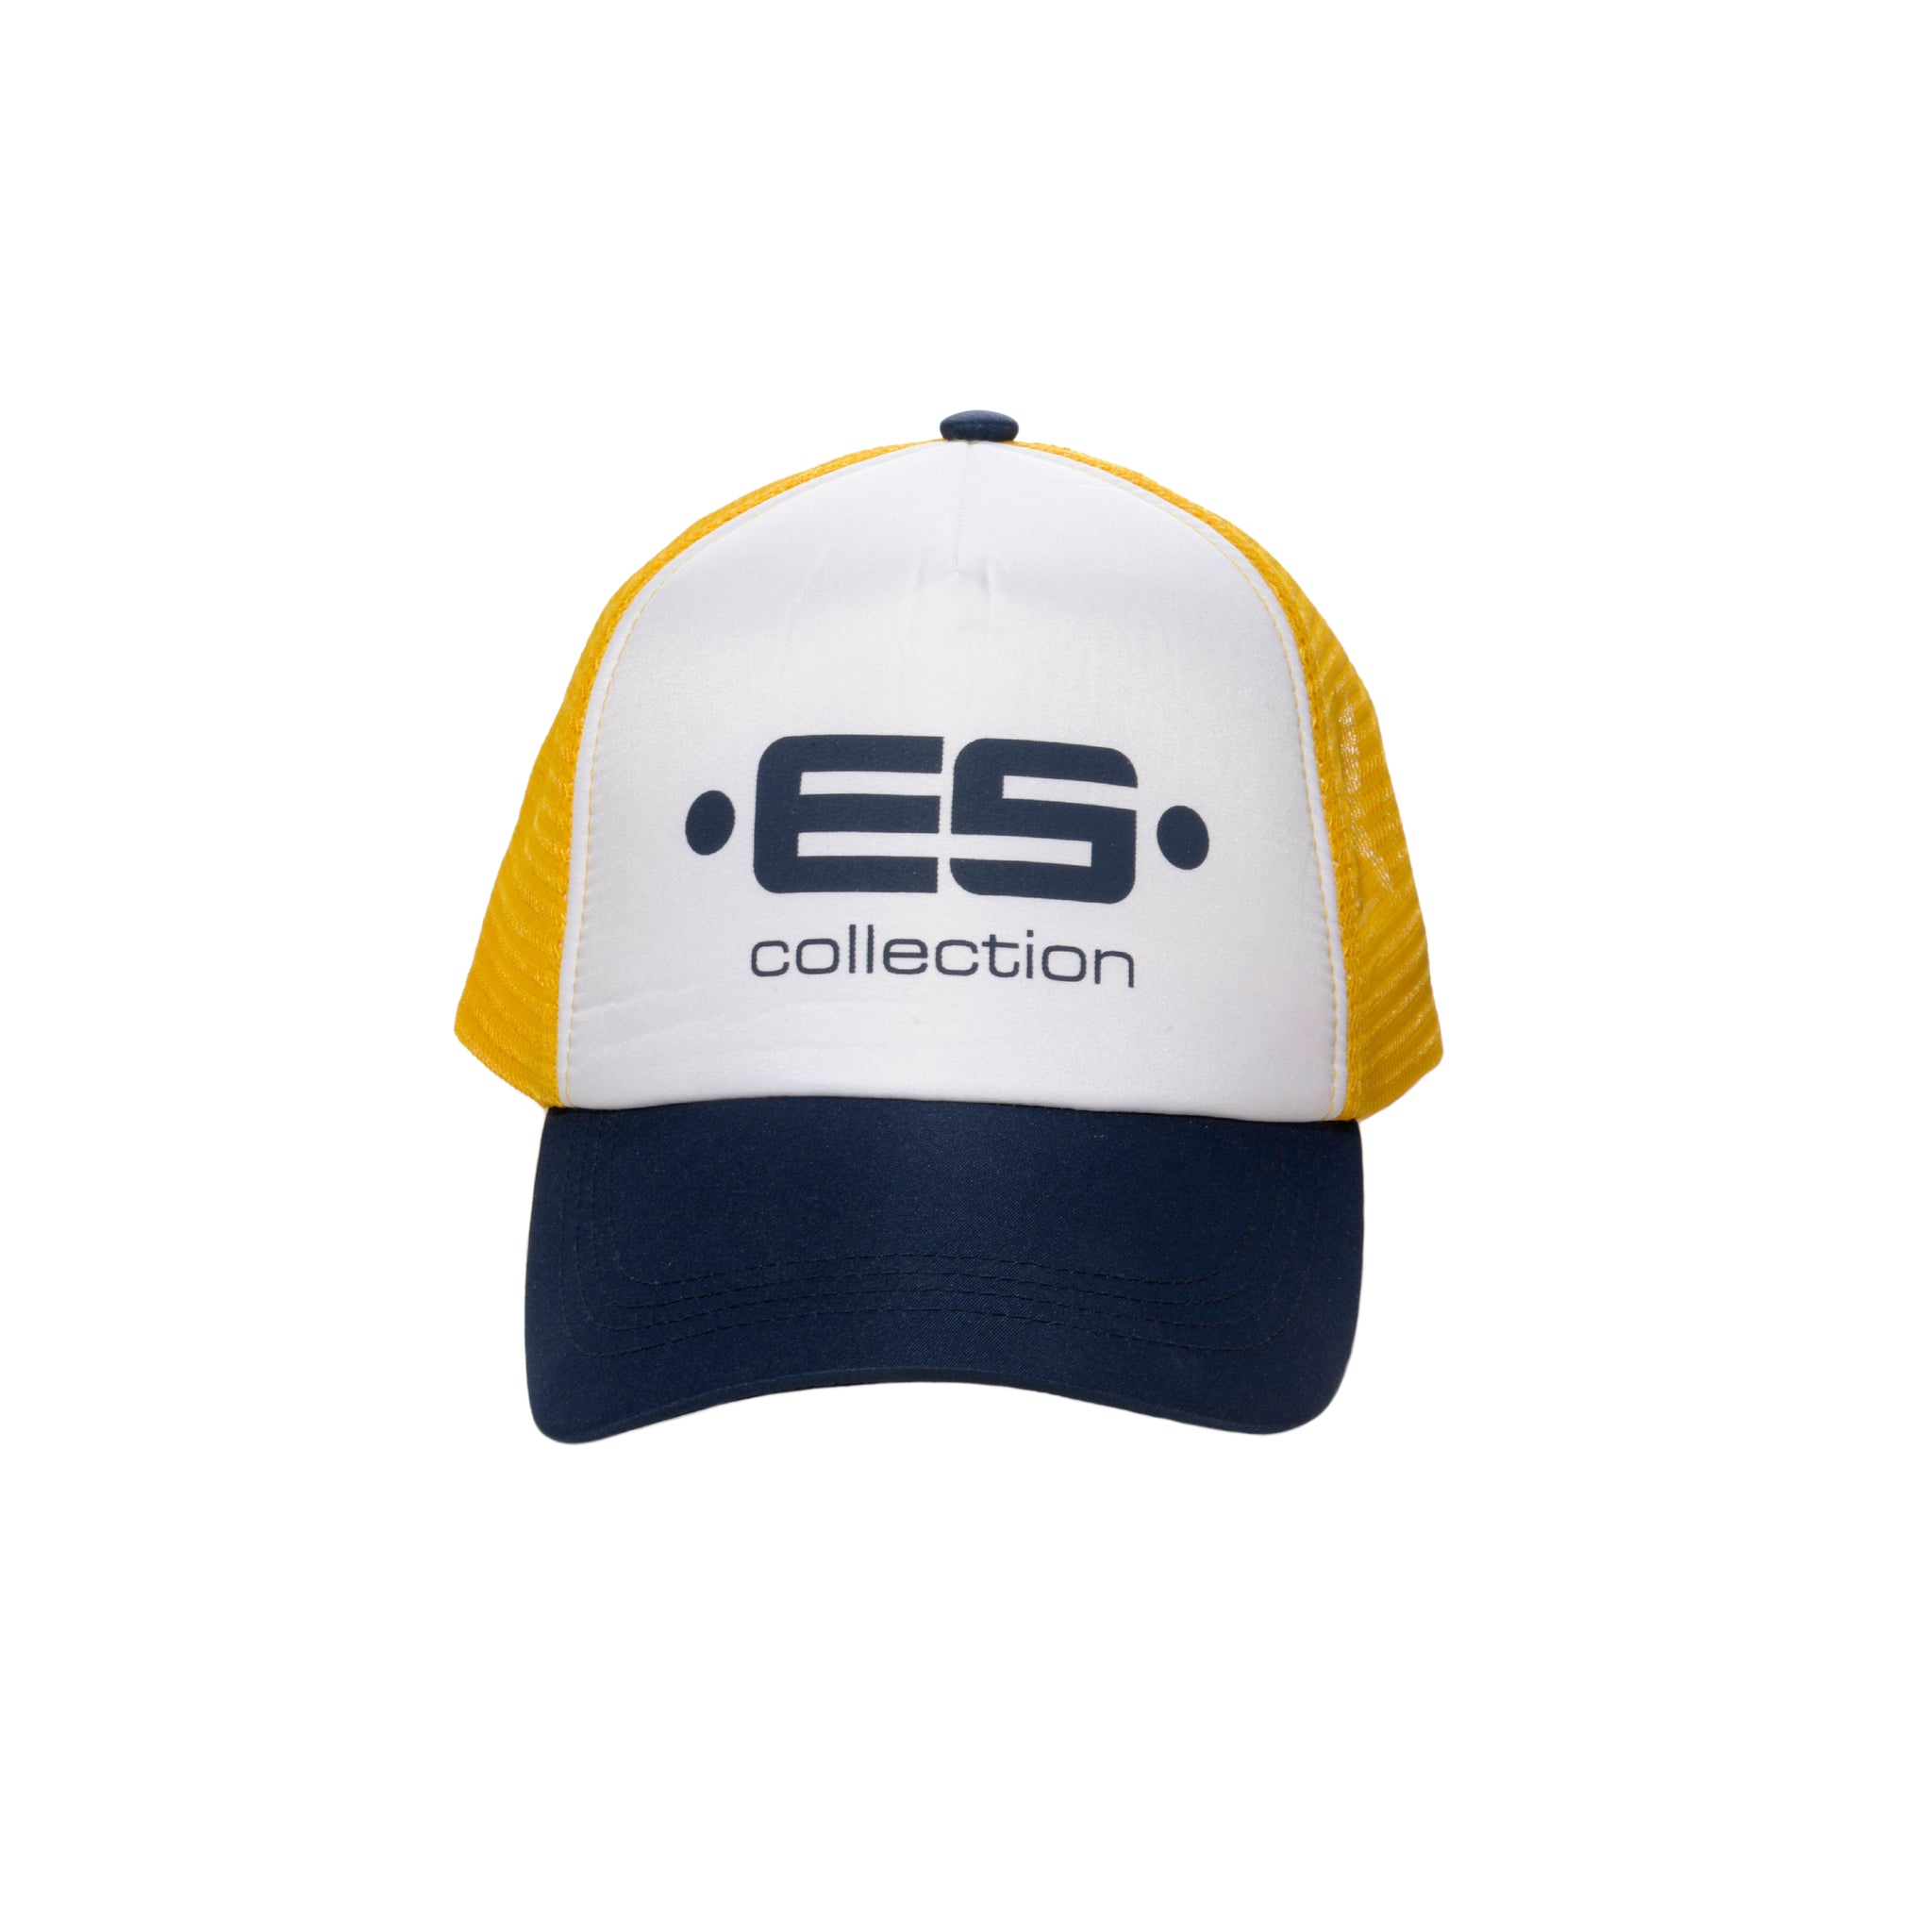 ES Collection Print Logo Baseball Cap Navy CAP003